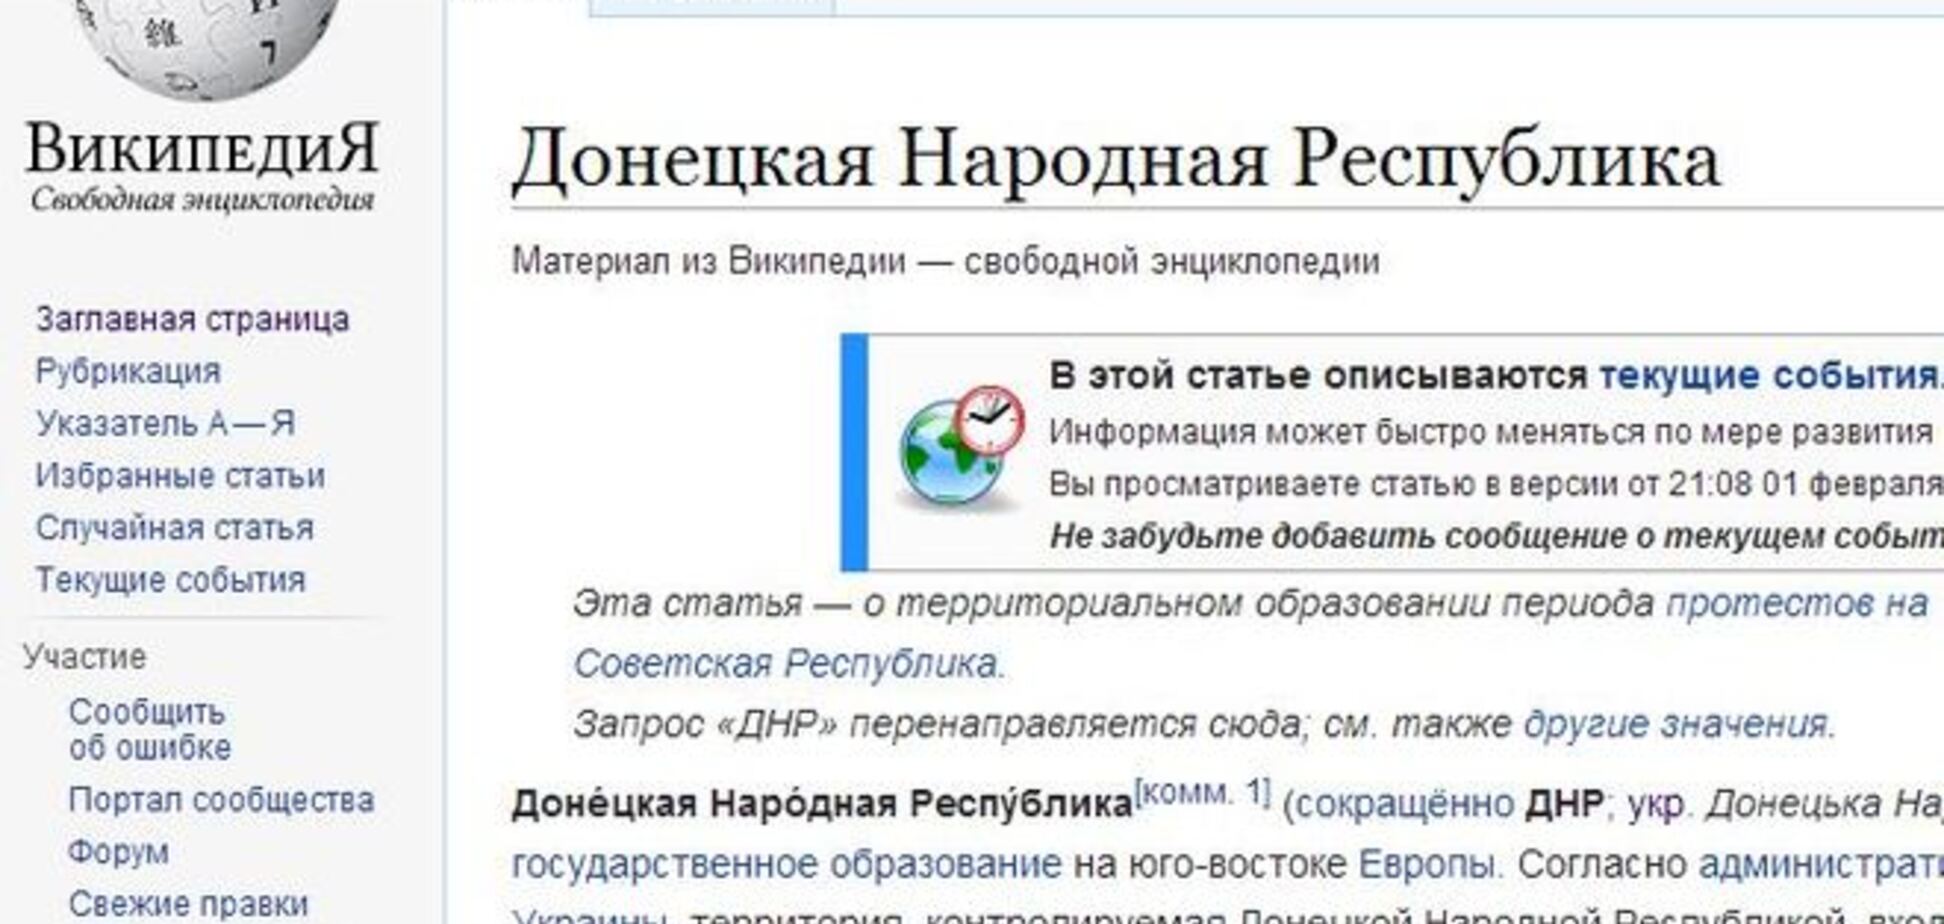 'Википедия' знает, что на самом деле думают о 'ДНР' иностранные государства: от Англии до Арабских Эмиратов